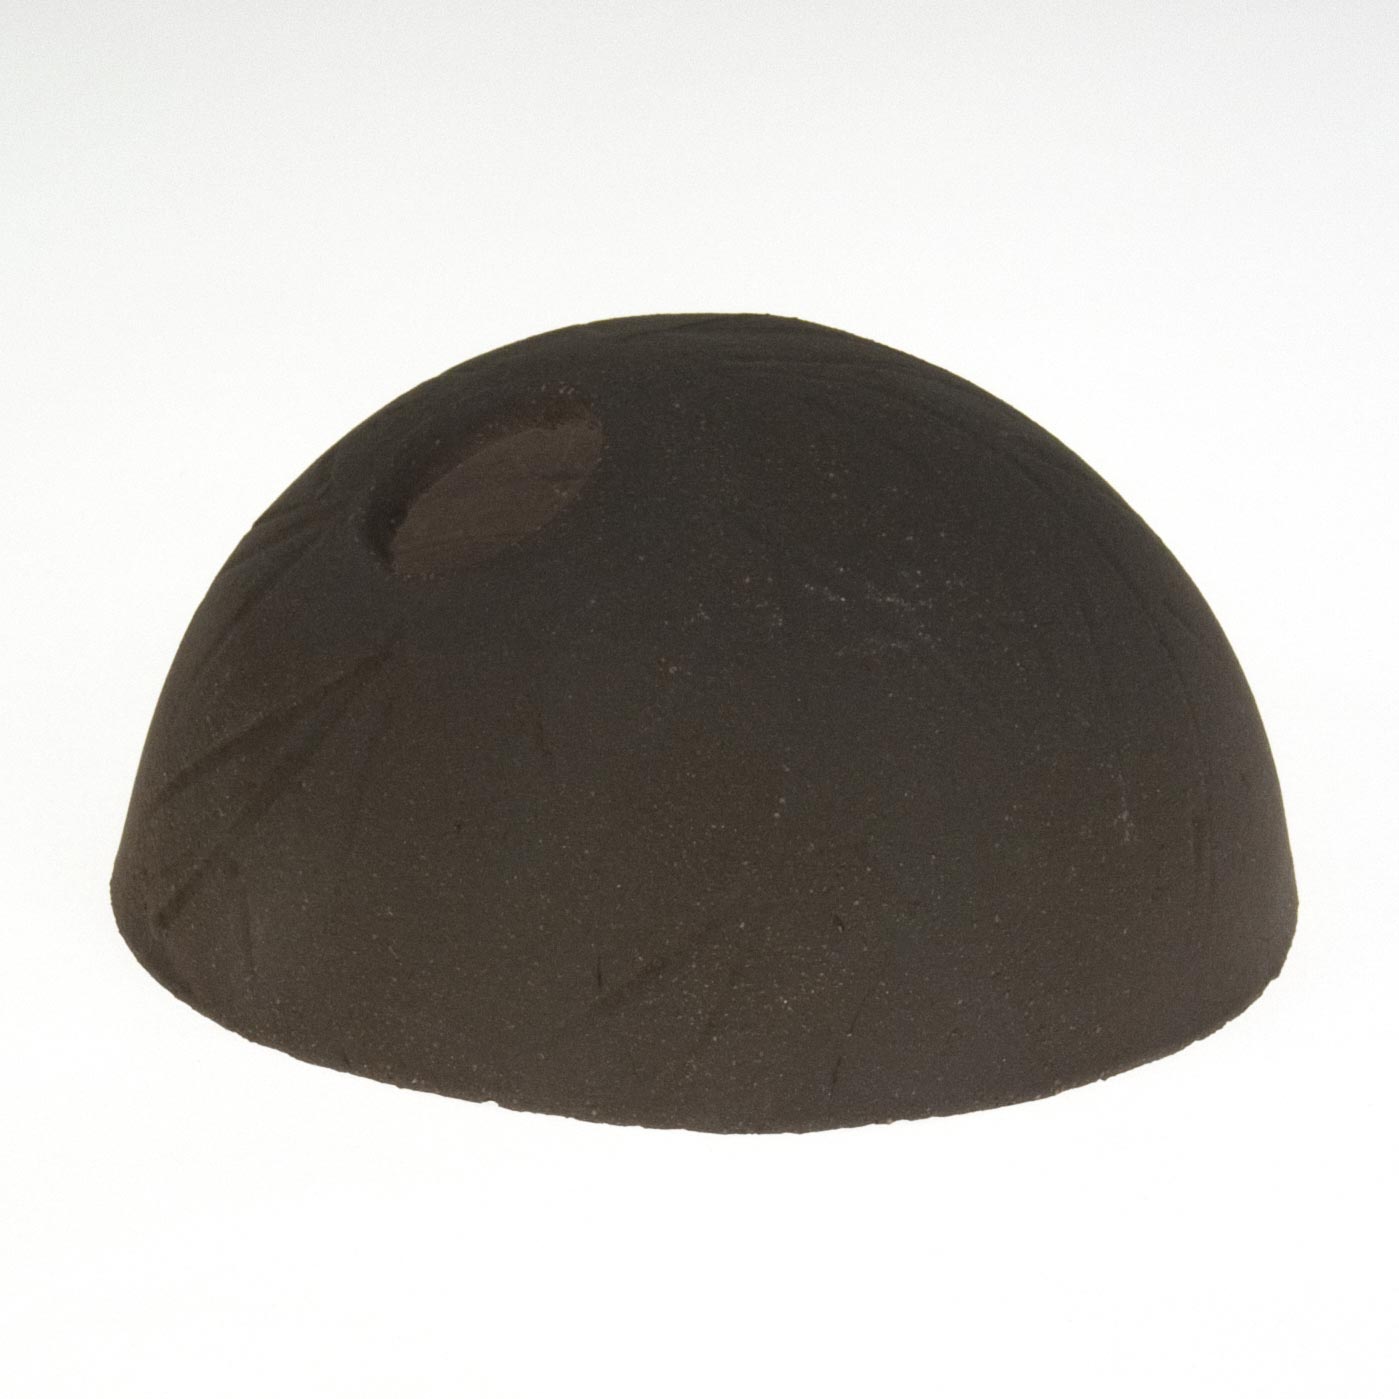 Clay igloo 'Coco' black